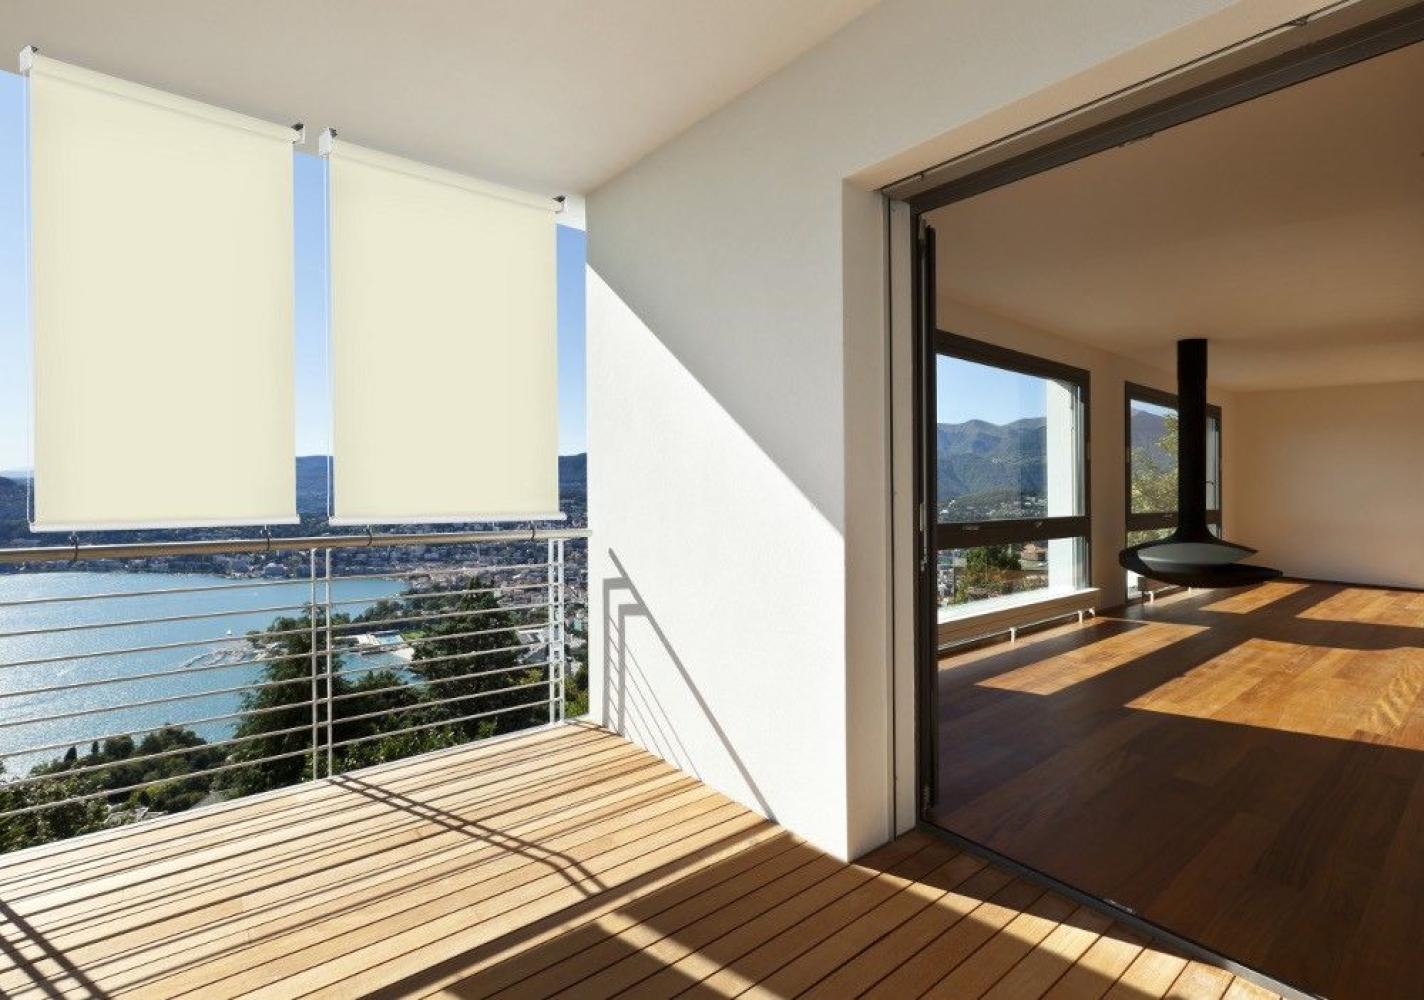 Sonnen-schutz Außen-rollo Balkon-rollo 140 x 140 cm beige creme Balkon-sicht-schutz 1 Stück Bild 1